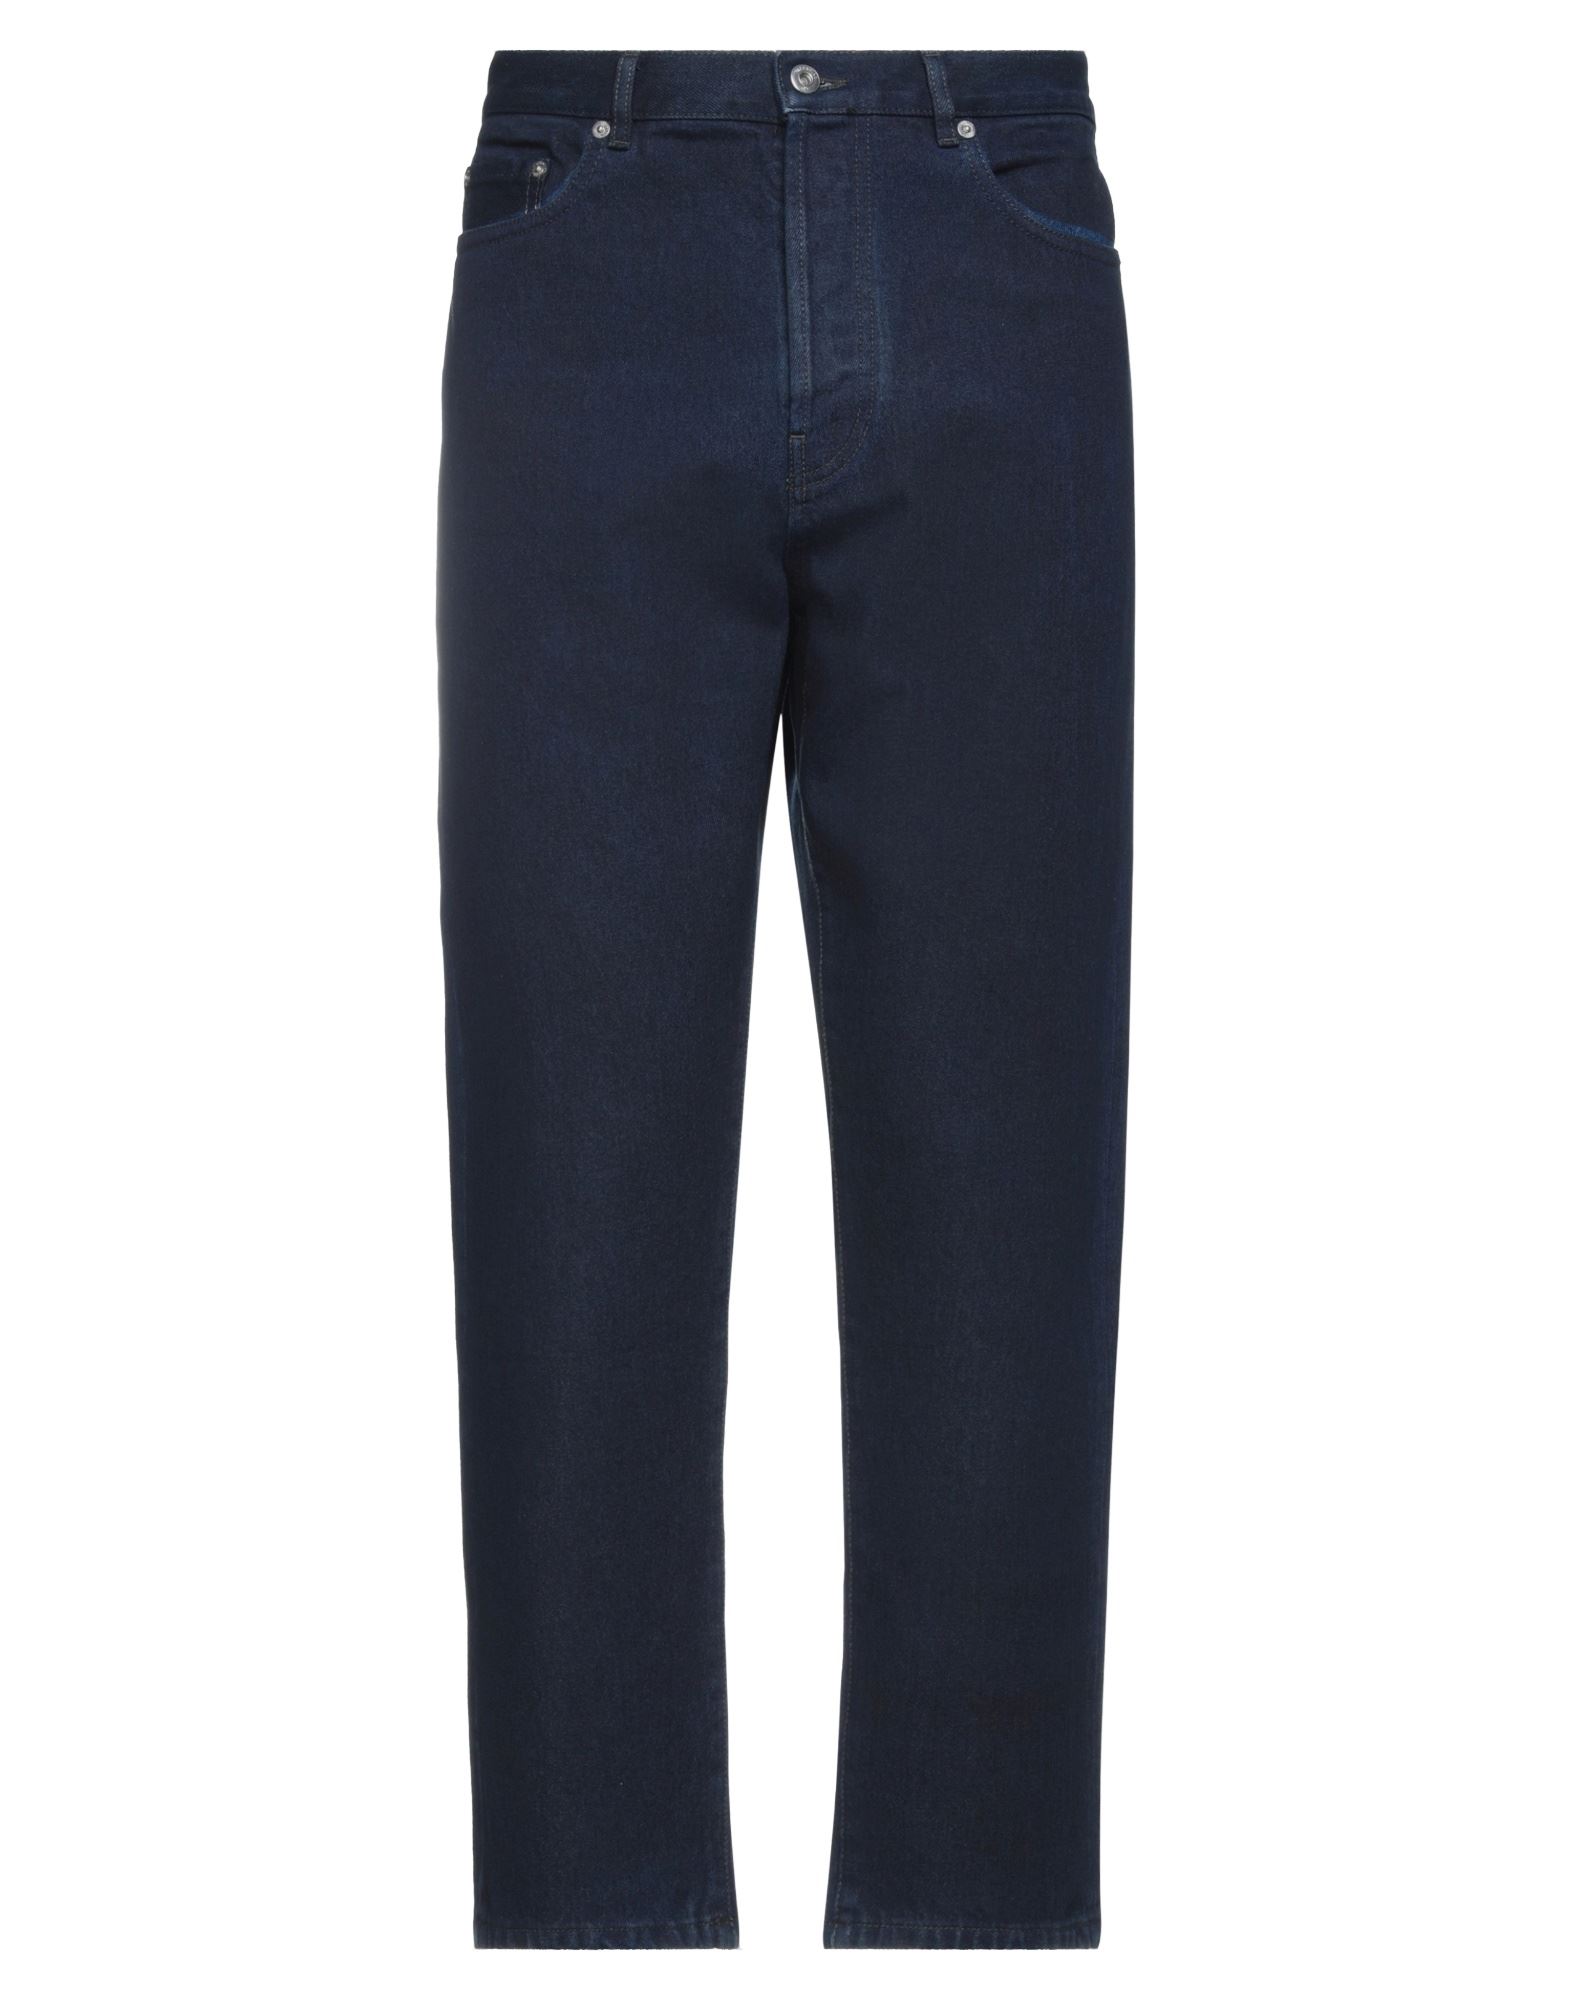 VALENTINOVALENTINO Jeans | DailyMail